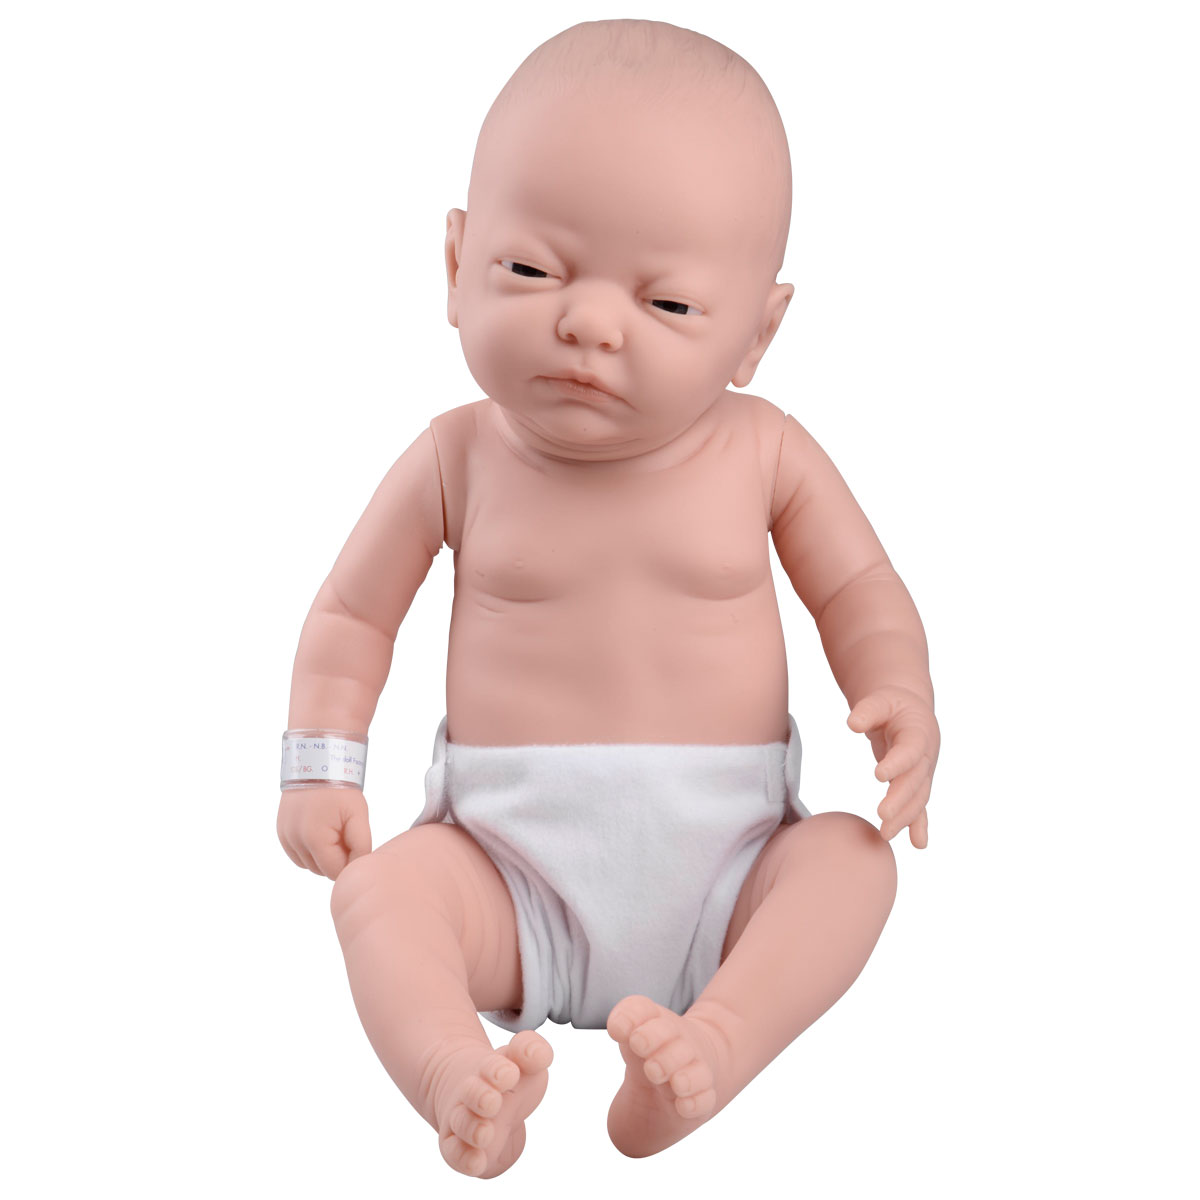 Pflegebaby, weiblich, Bestellnummer 1005089, W17001, 60109, The Doll Factory